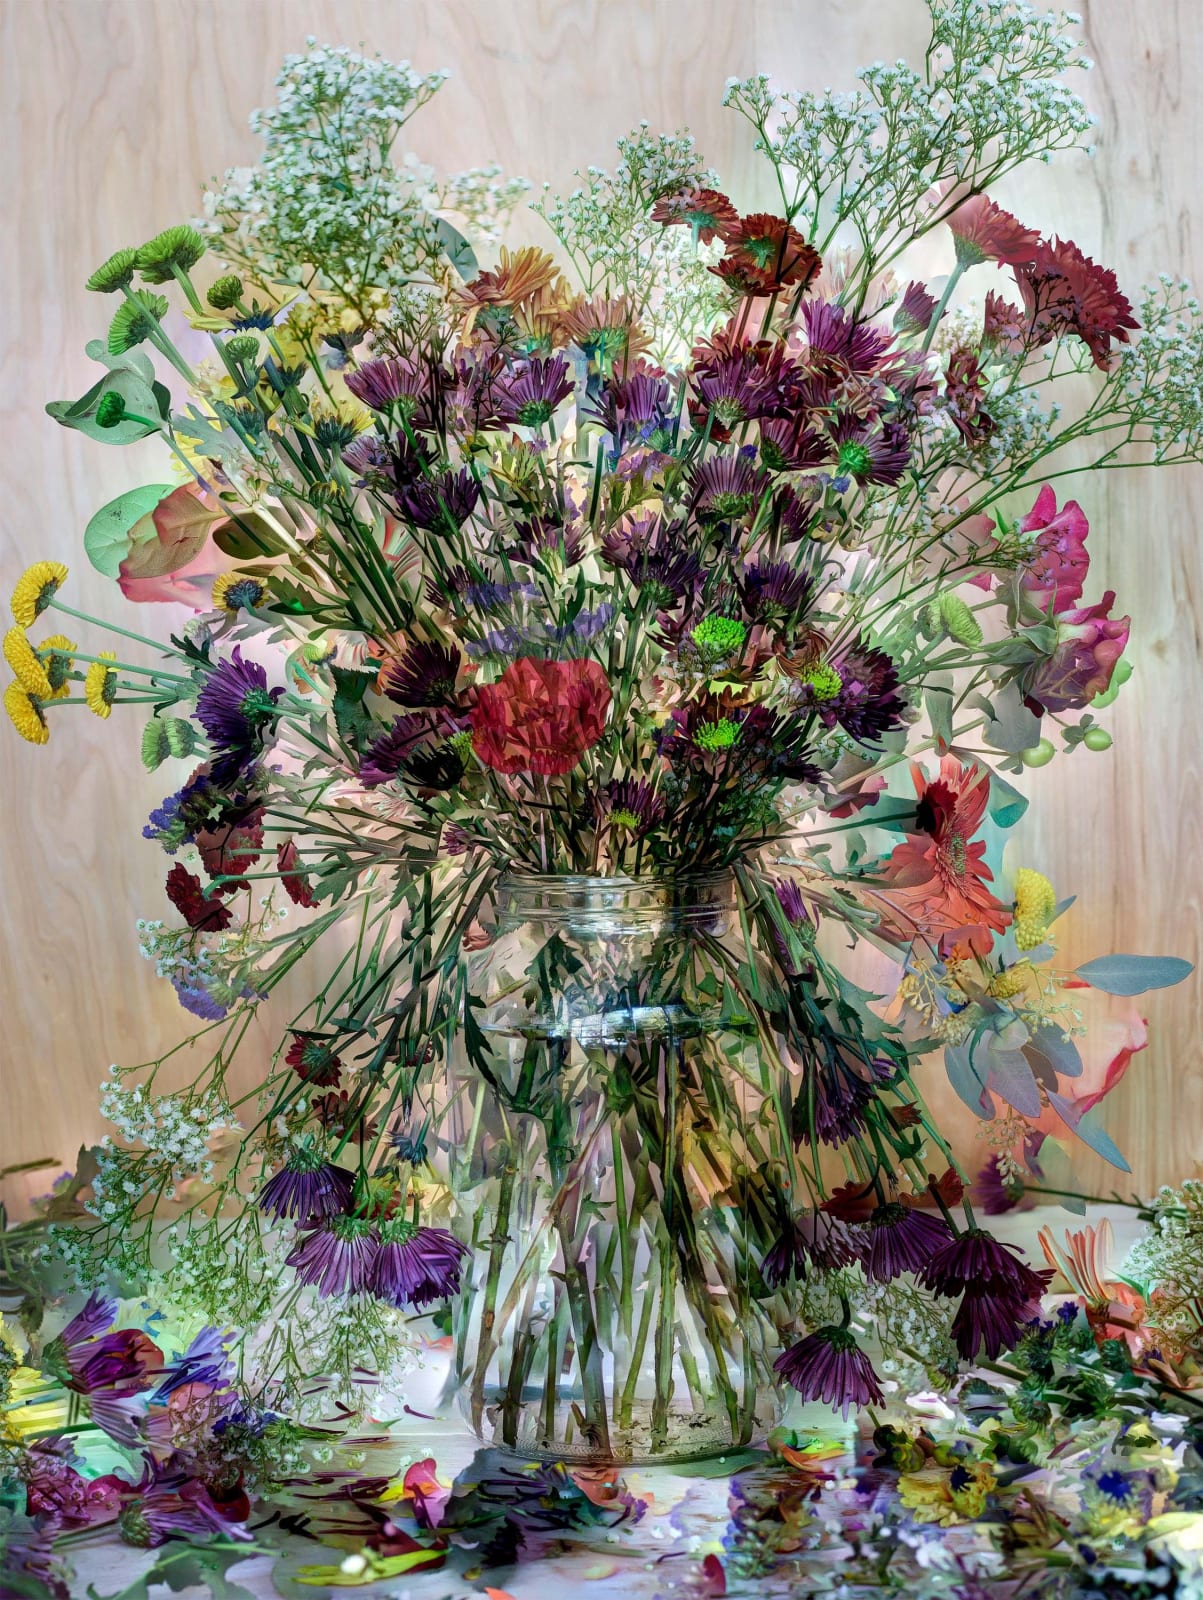 Abelardo Morell, Flowers for Lisa #2, 2015